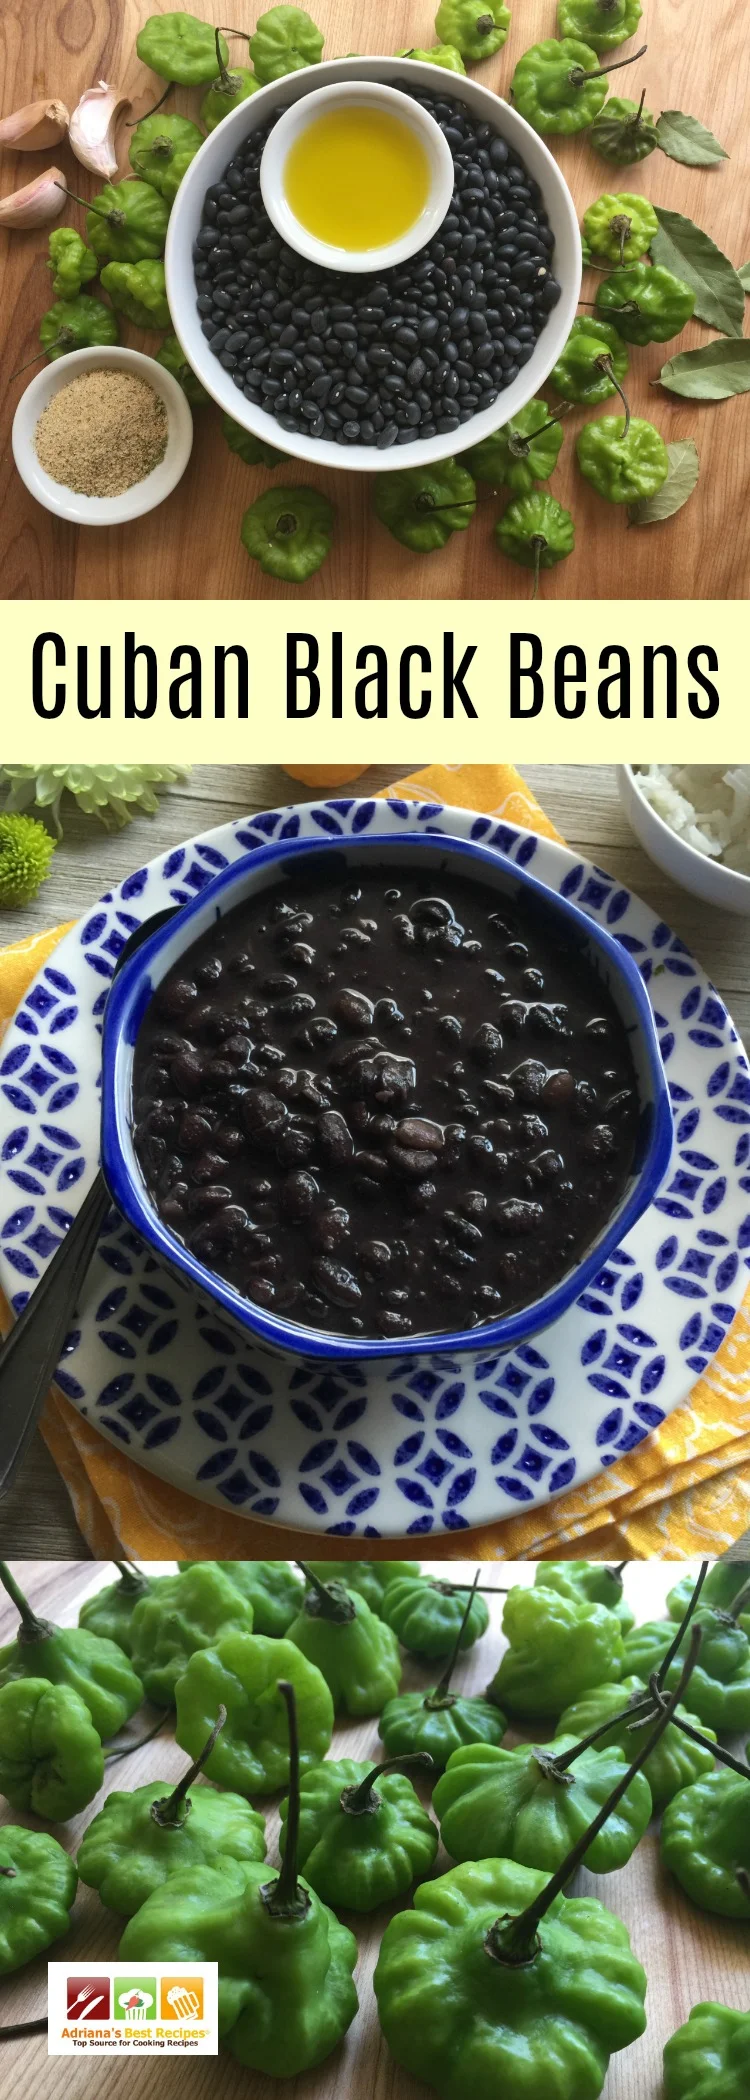 Frijoles negros cubanos hechos con aceite de oliva, sazón cubano, ajo y ajíes cachucha. Una receta muy sencilla pero deliciosa.